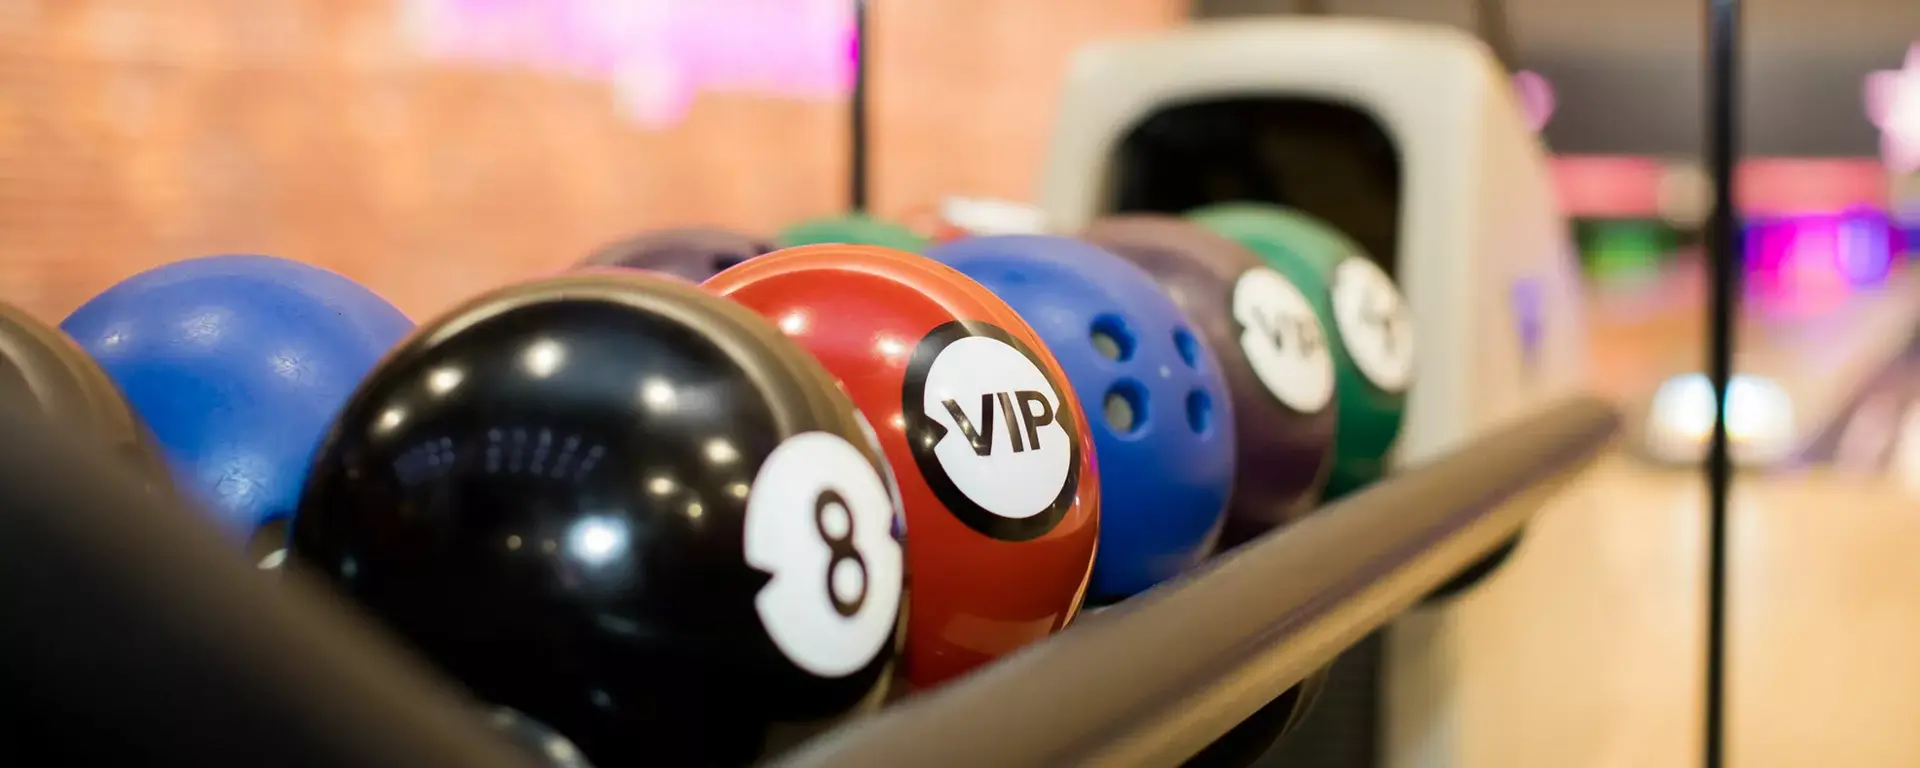 VIP bowling balls on lanes at Hollywood Bowl Ashford